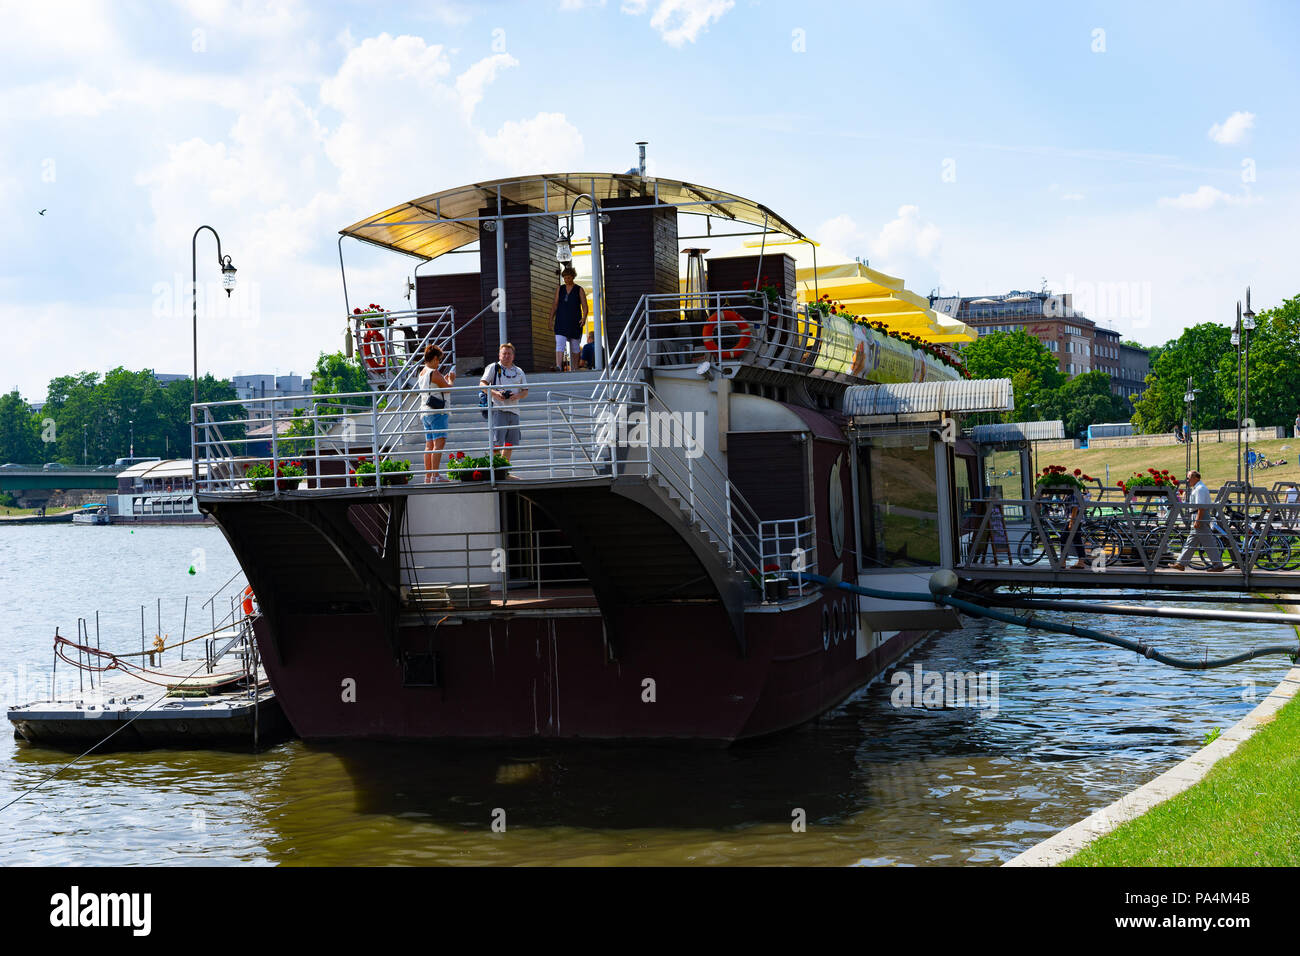 Grande fiume in barca di crociera essendo utilizzato come un ristorante sul fiume Vistola, Cracovia, in Polonia, in Europa. Foto Stock